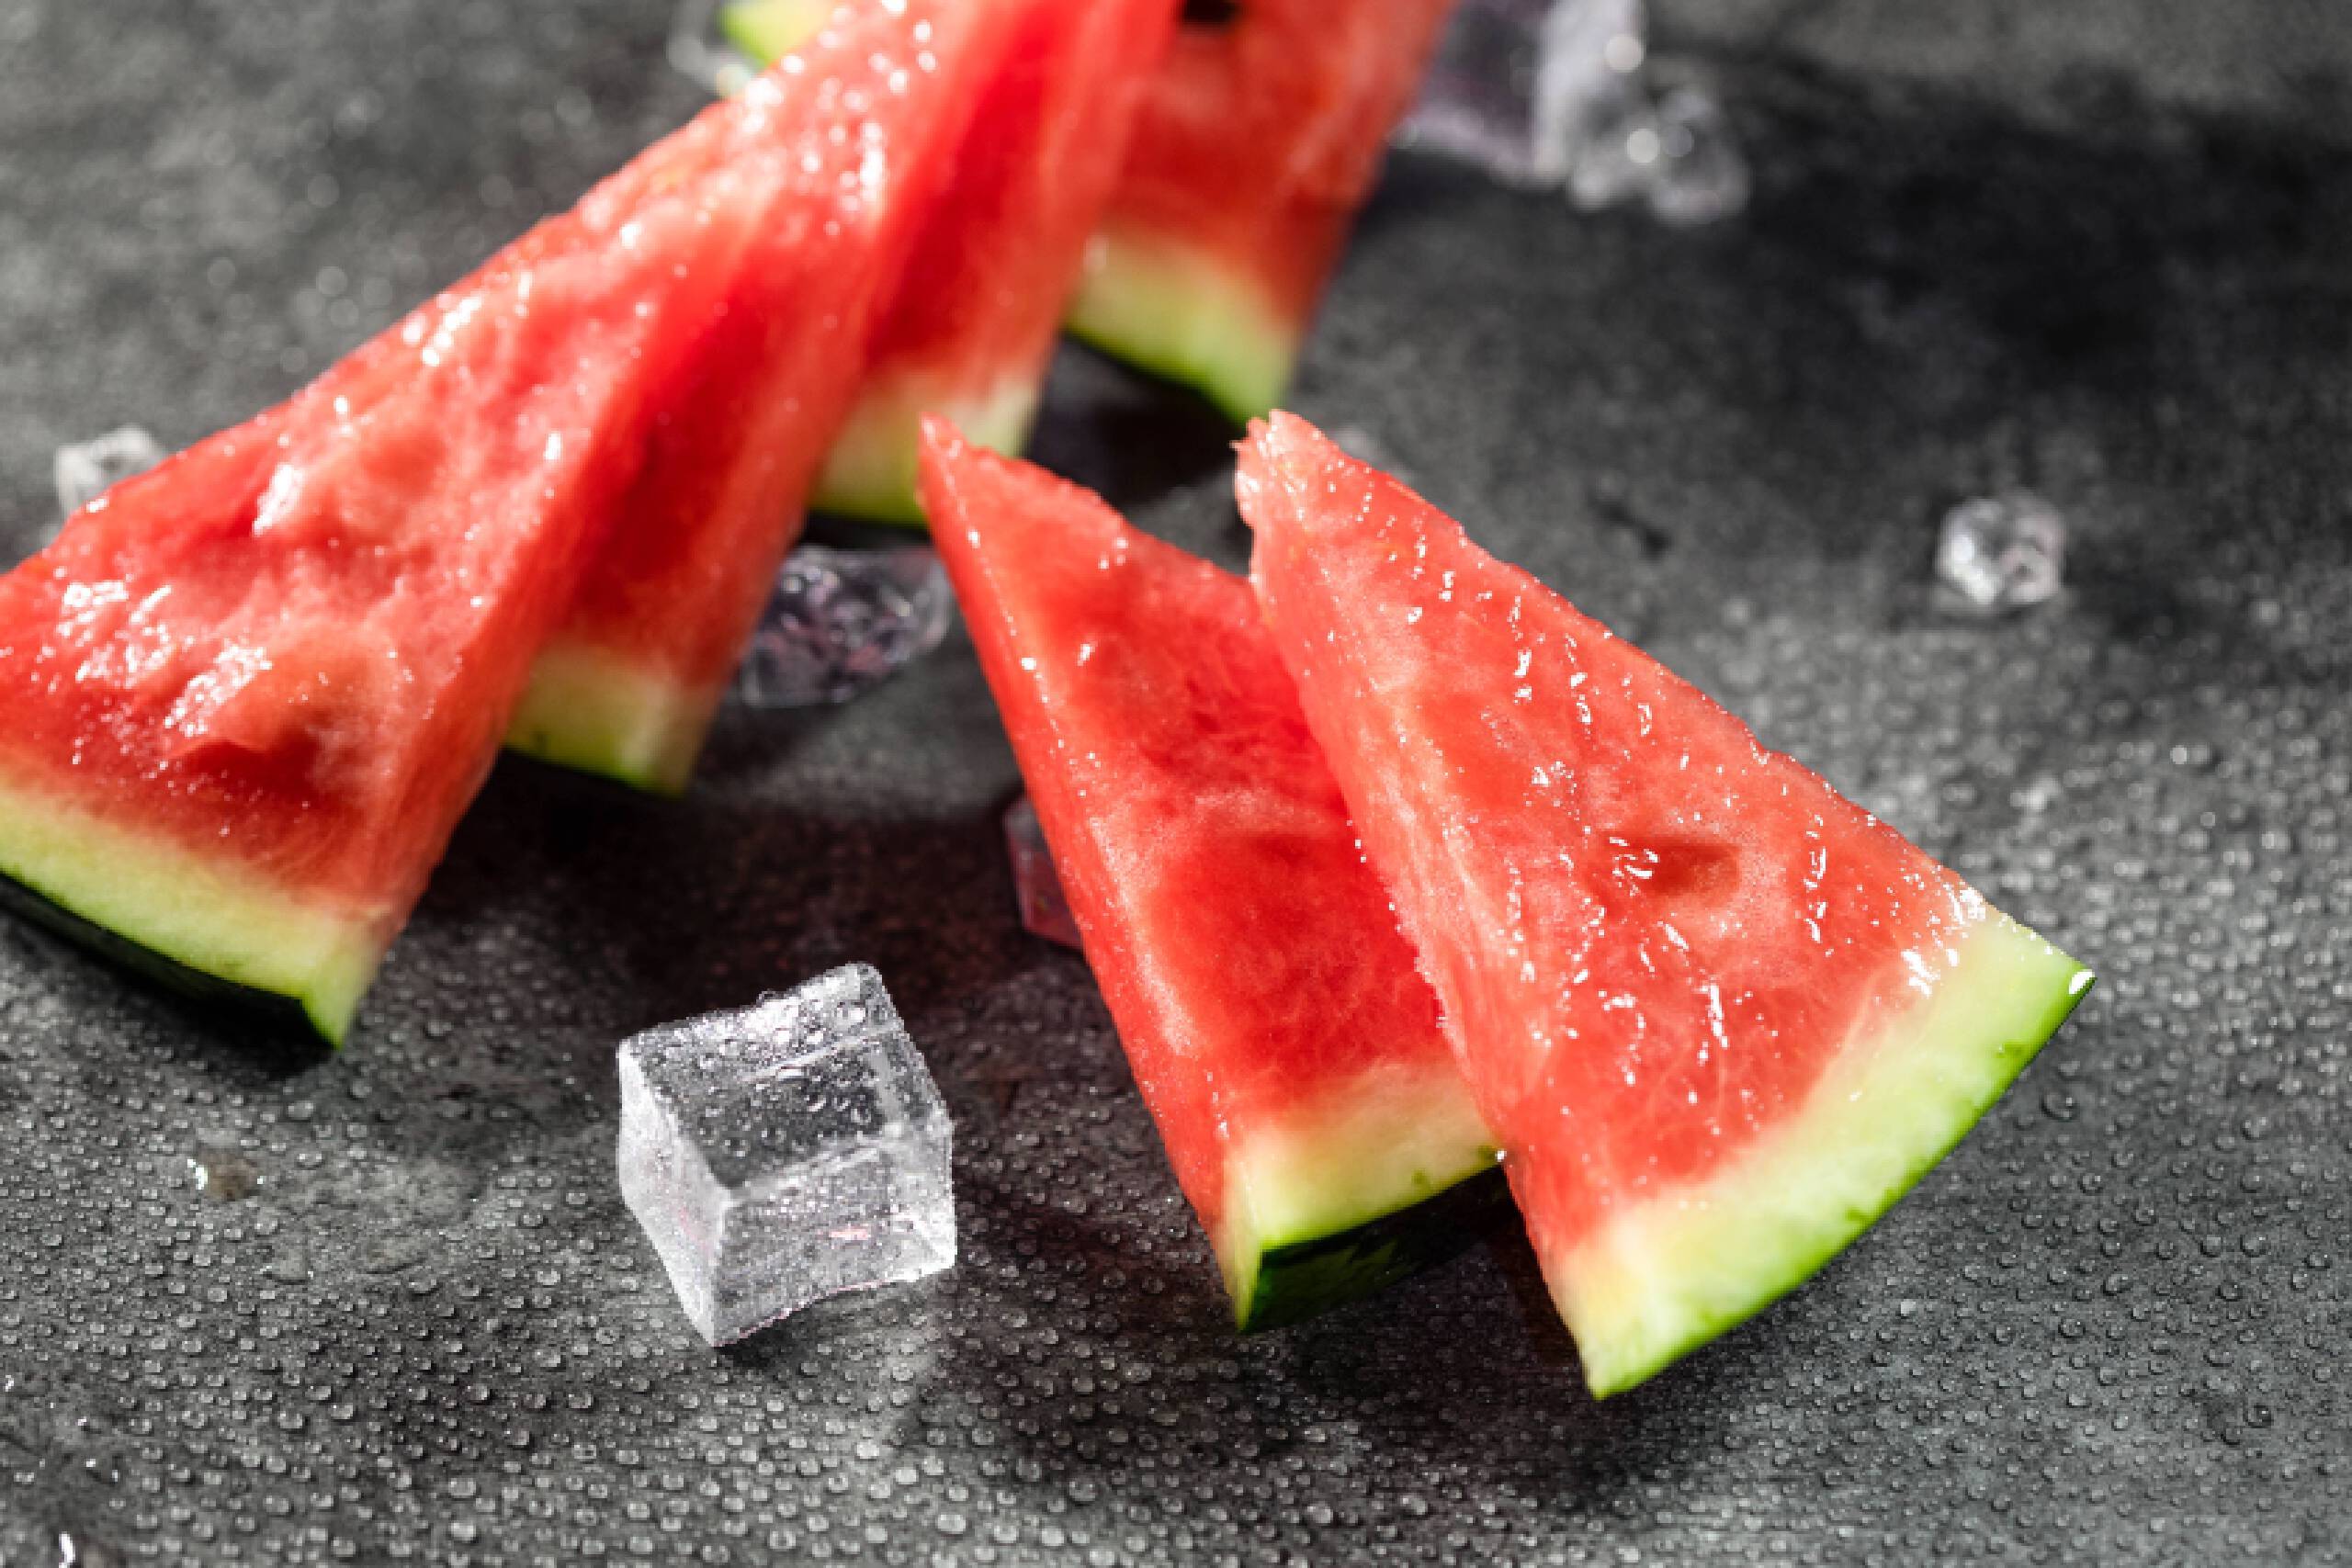 西瓜是比较偏寒性,因此在暑气旺盛的夏日吃西瓜可以减少暑气